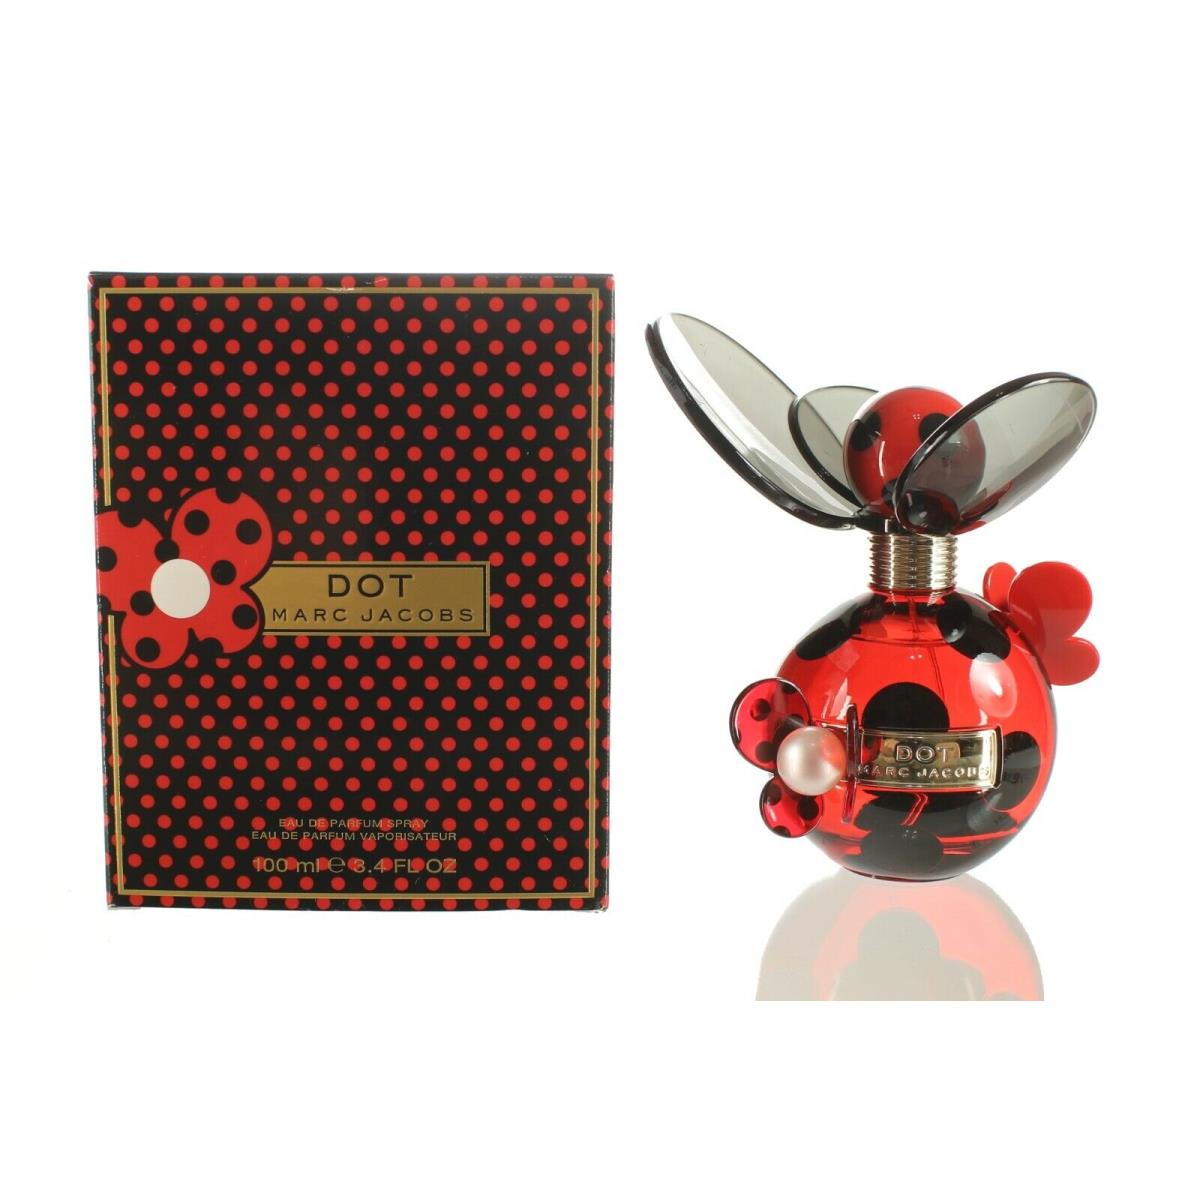 Marc Jacobs Dot Women S Eau DE Parfum Perfume Spray 3.4 OZ ...